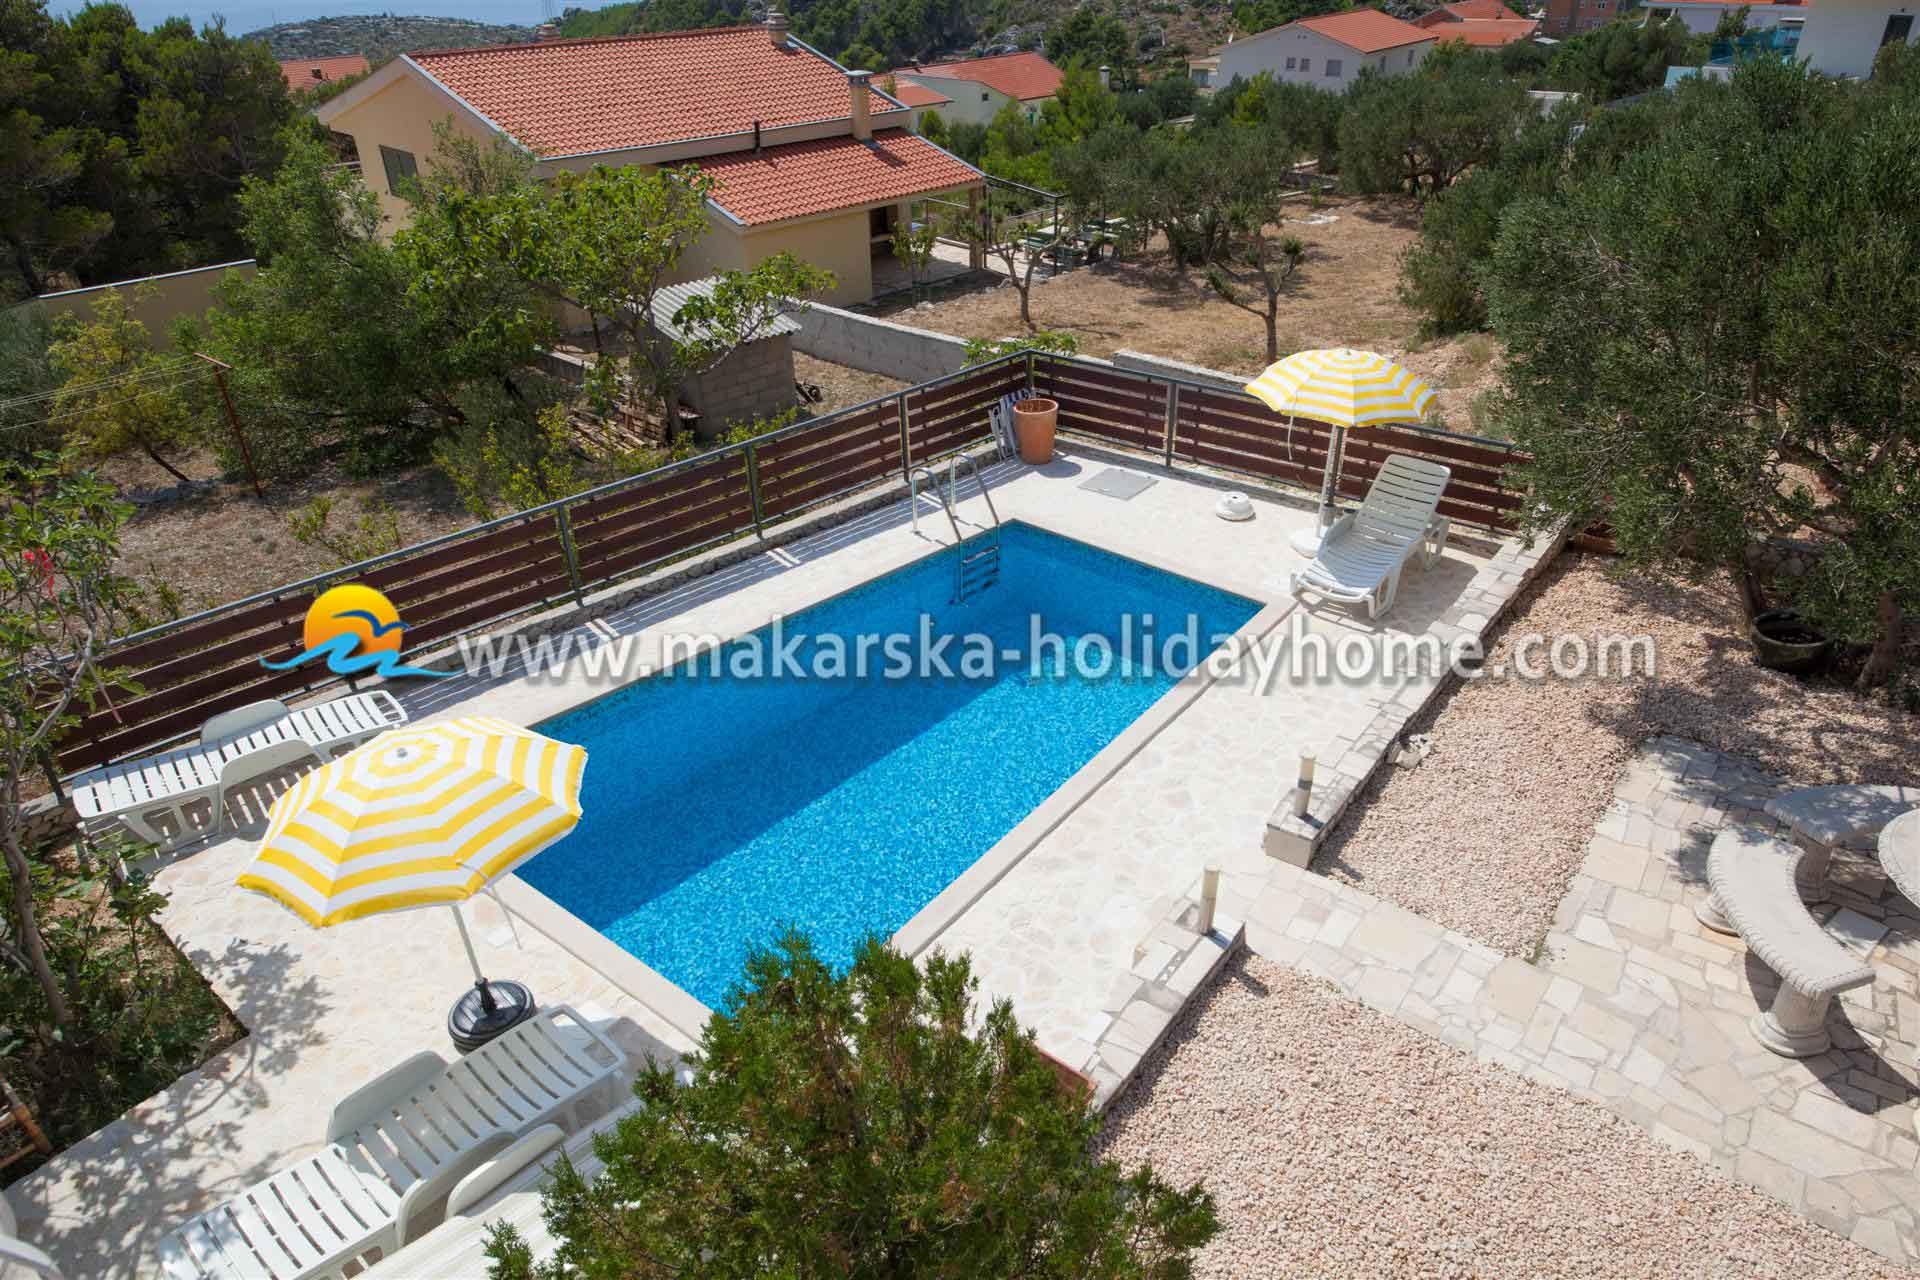 Ferienhaus mit Pool in Kroatien - Makarska - Villa Leon / 30